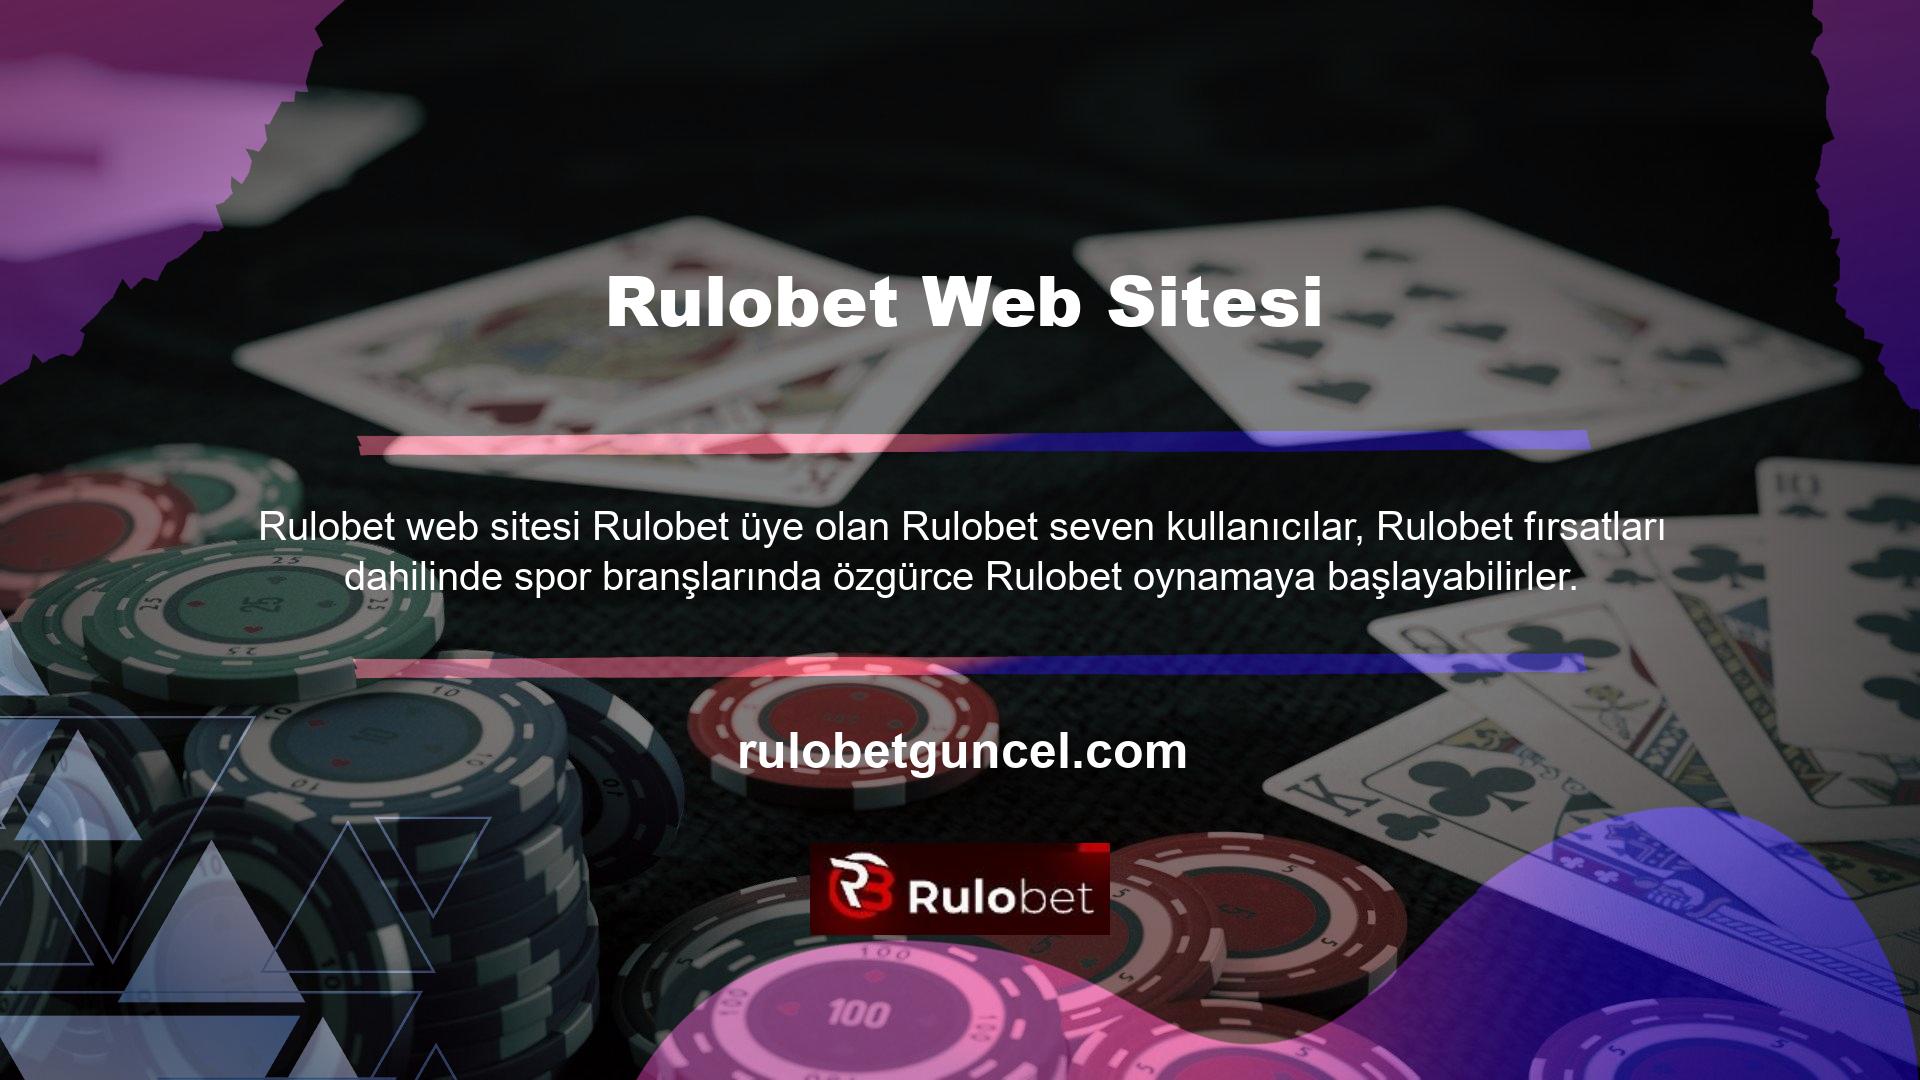 Rulobet web sitesi, futbol maçlarında geleneksel Rulobet seçenekleriyle canlı Rulobet seçenekleri sunar